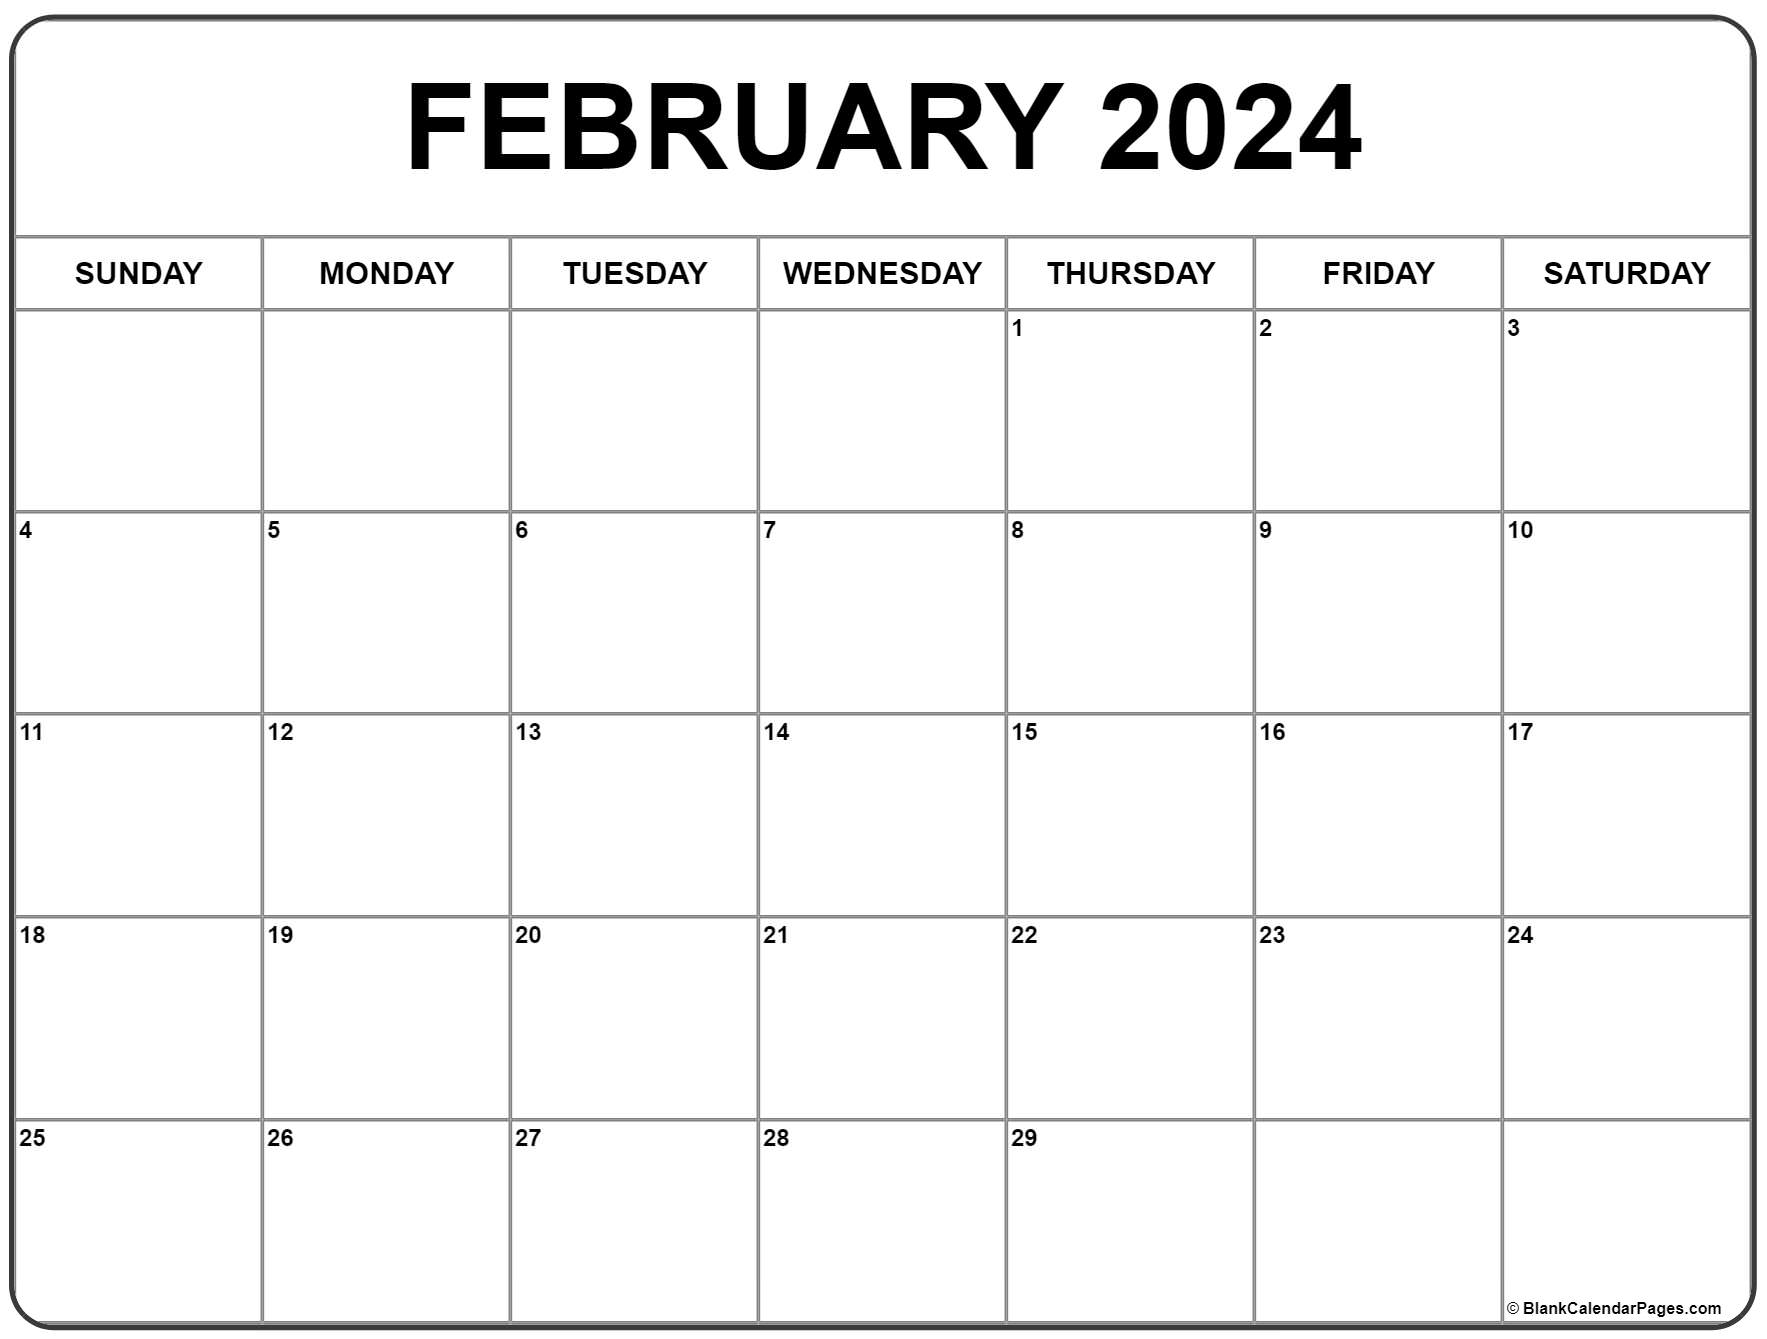 February 2024 Calendar | Free Printable Calendar for Printable Calendar February 2024 Free